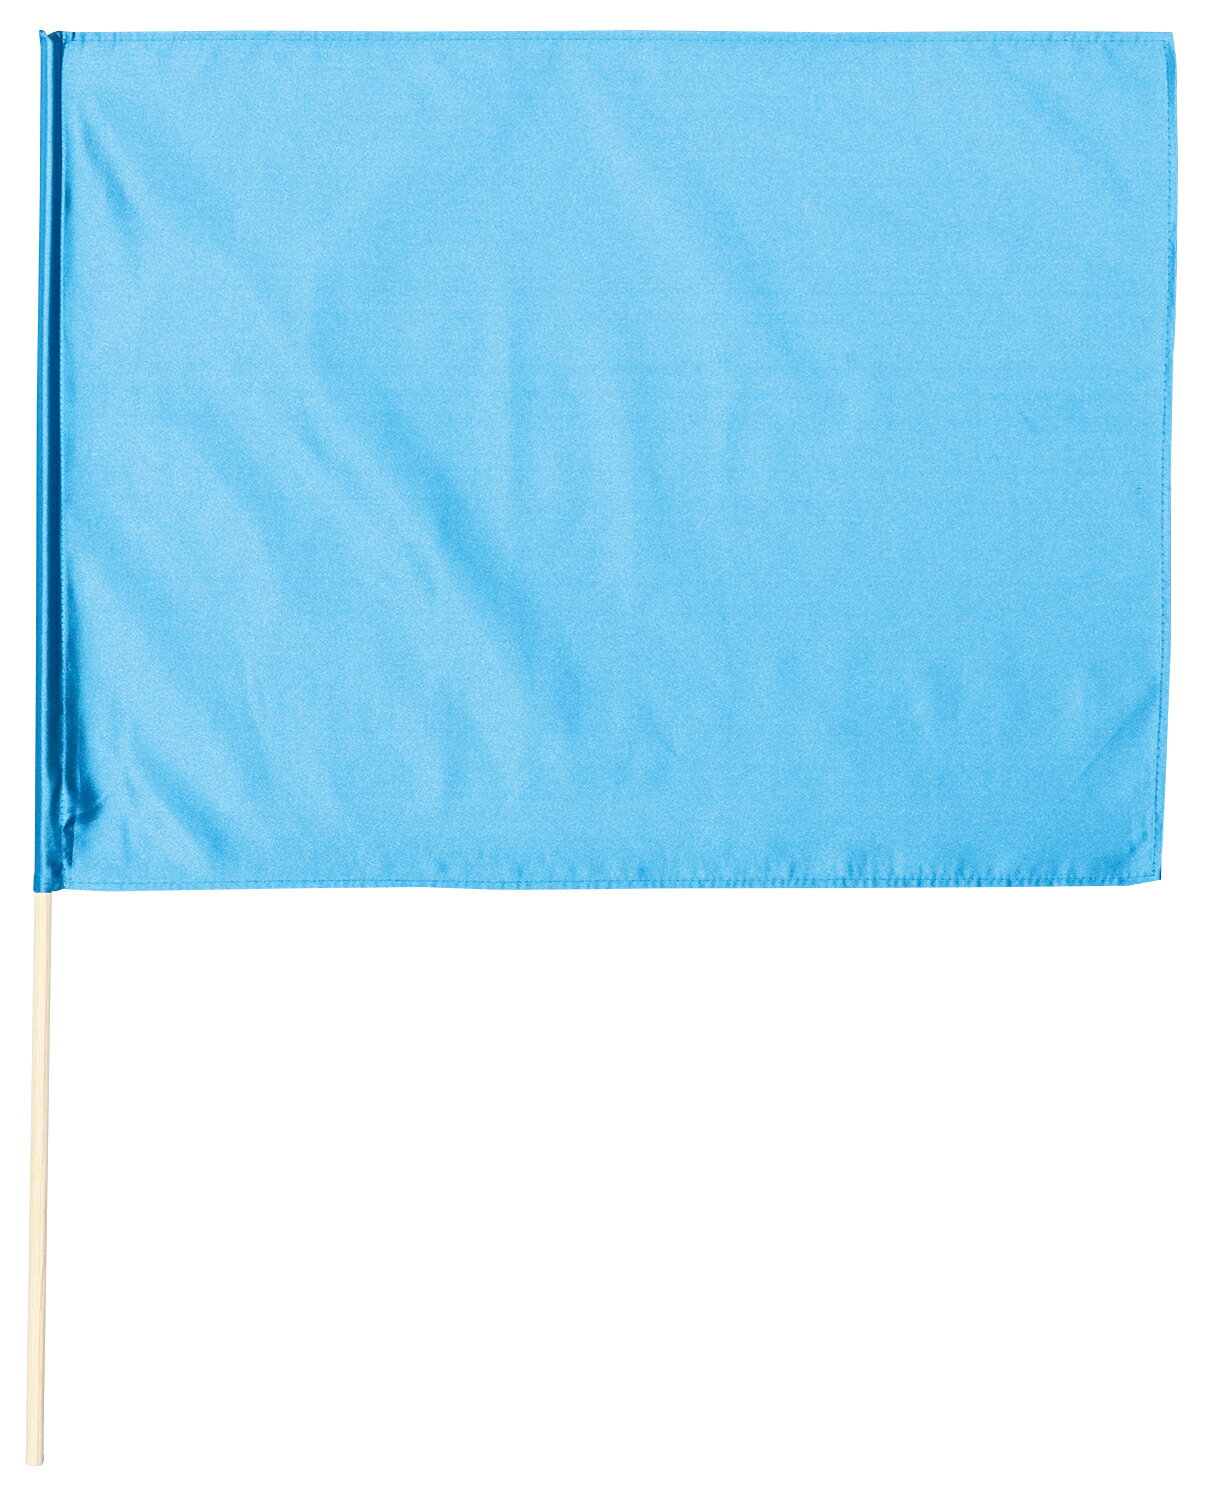 無地色旗 サテン特大旗 メタリックブルー(14421) 運動会向け 60×80cm 棒付き 素材ポリエステルサテン